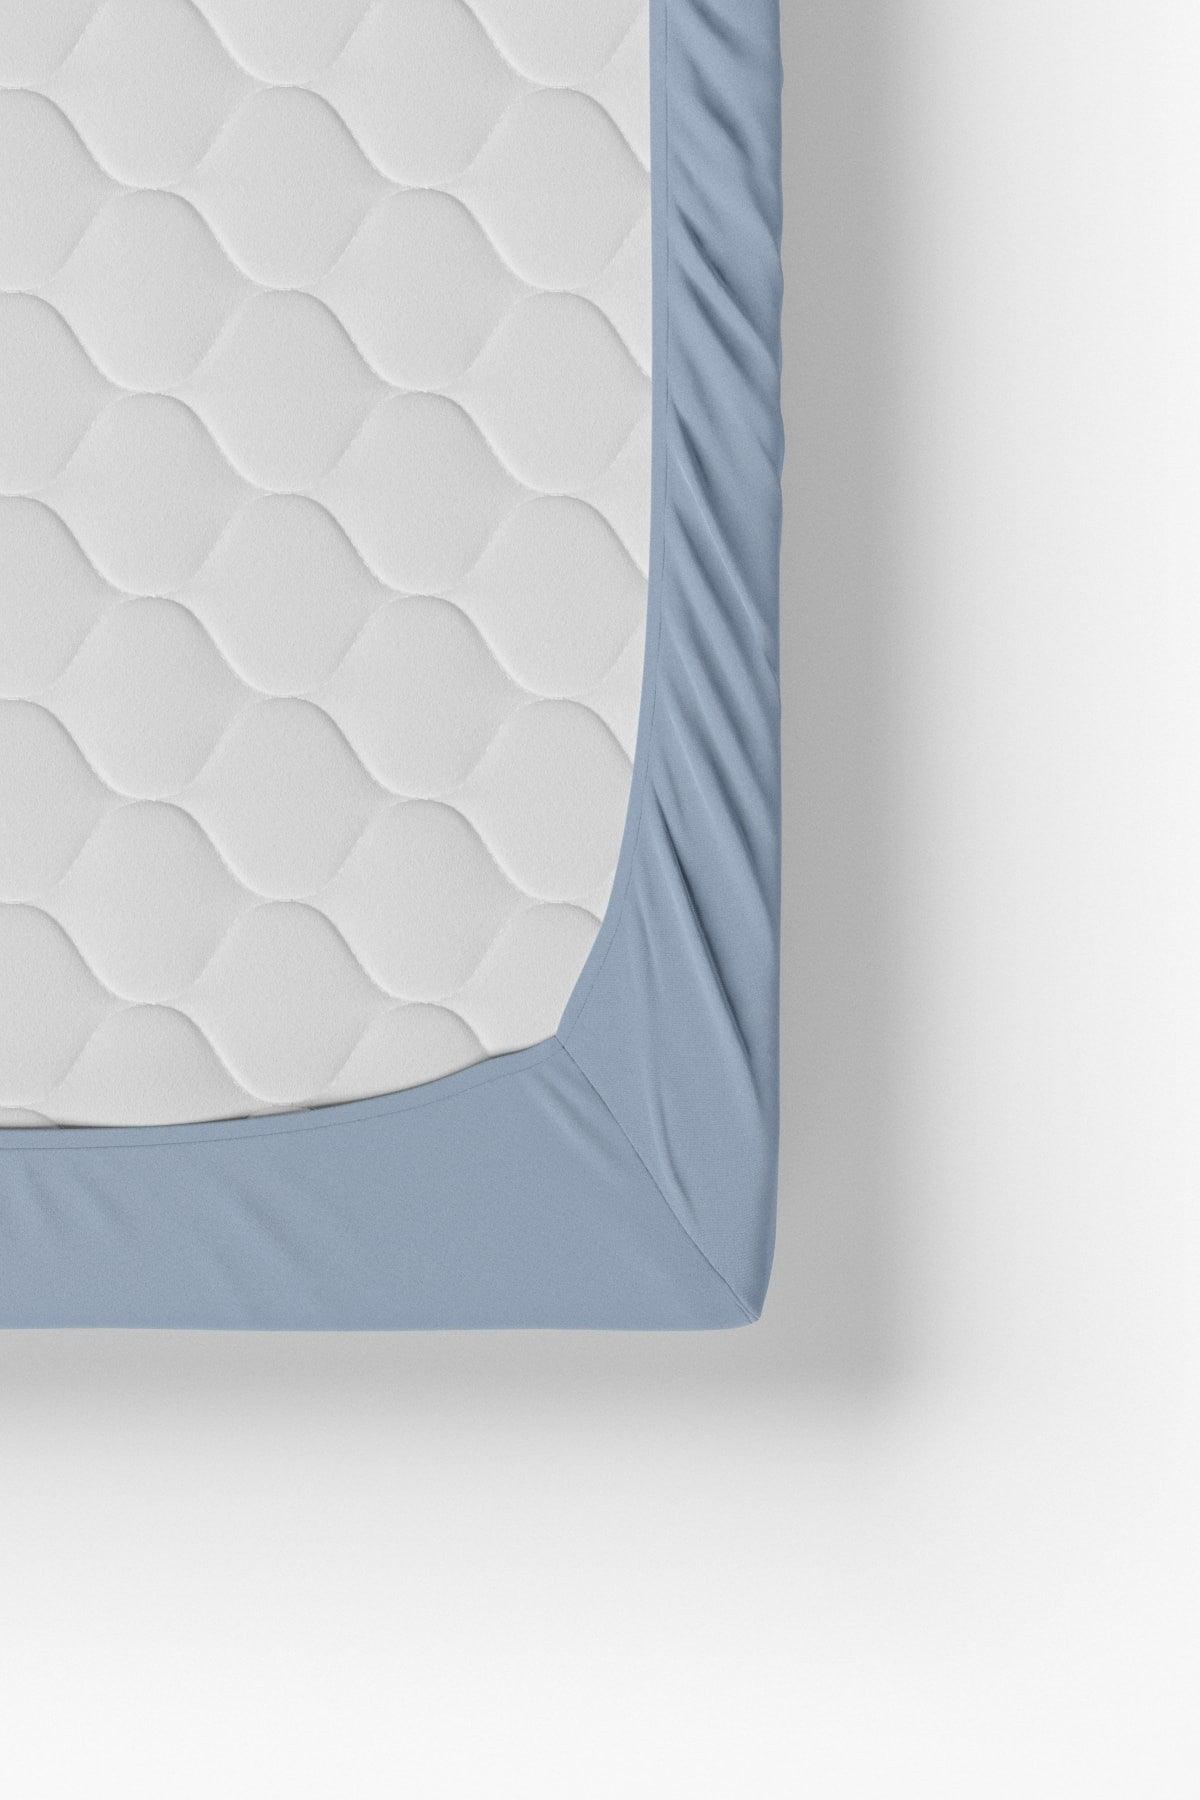 Single Cotton Elastic Bed Sheet - Blue - Swordslife